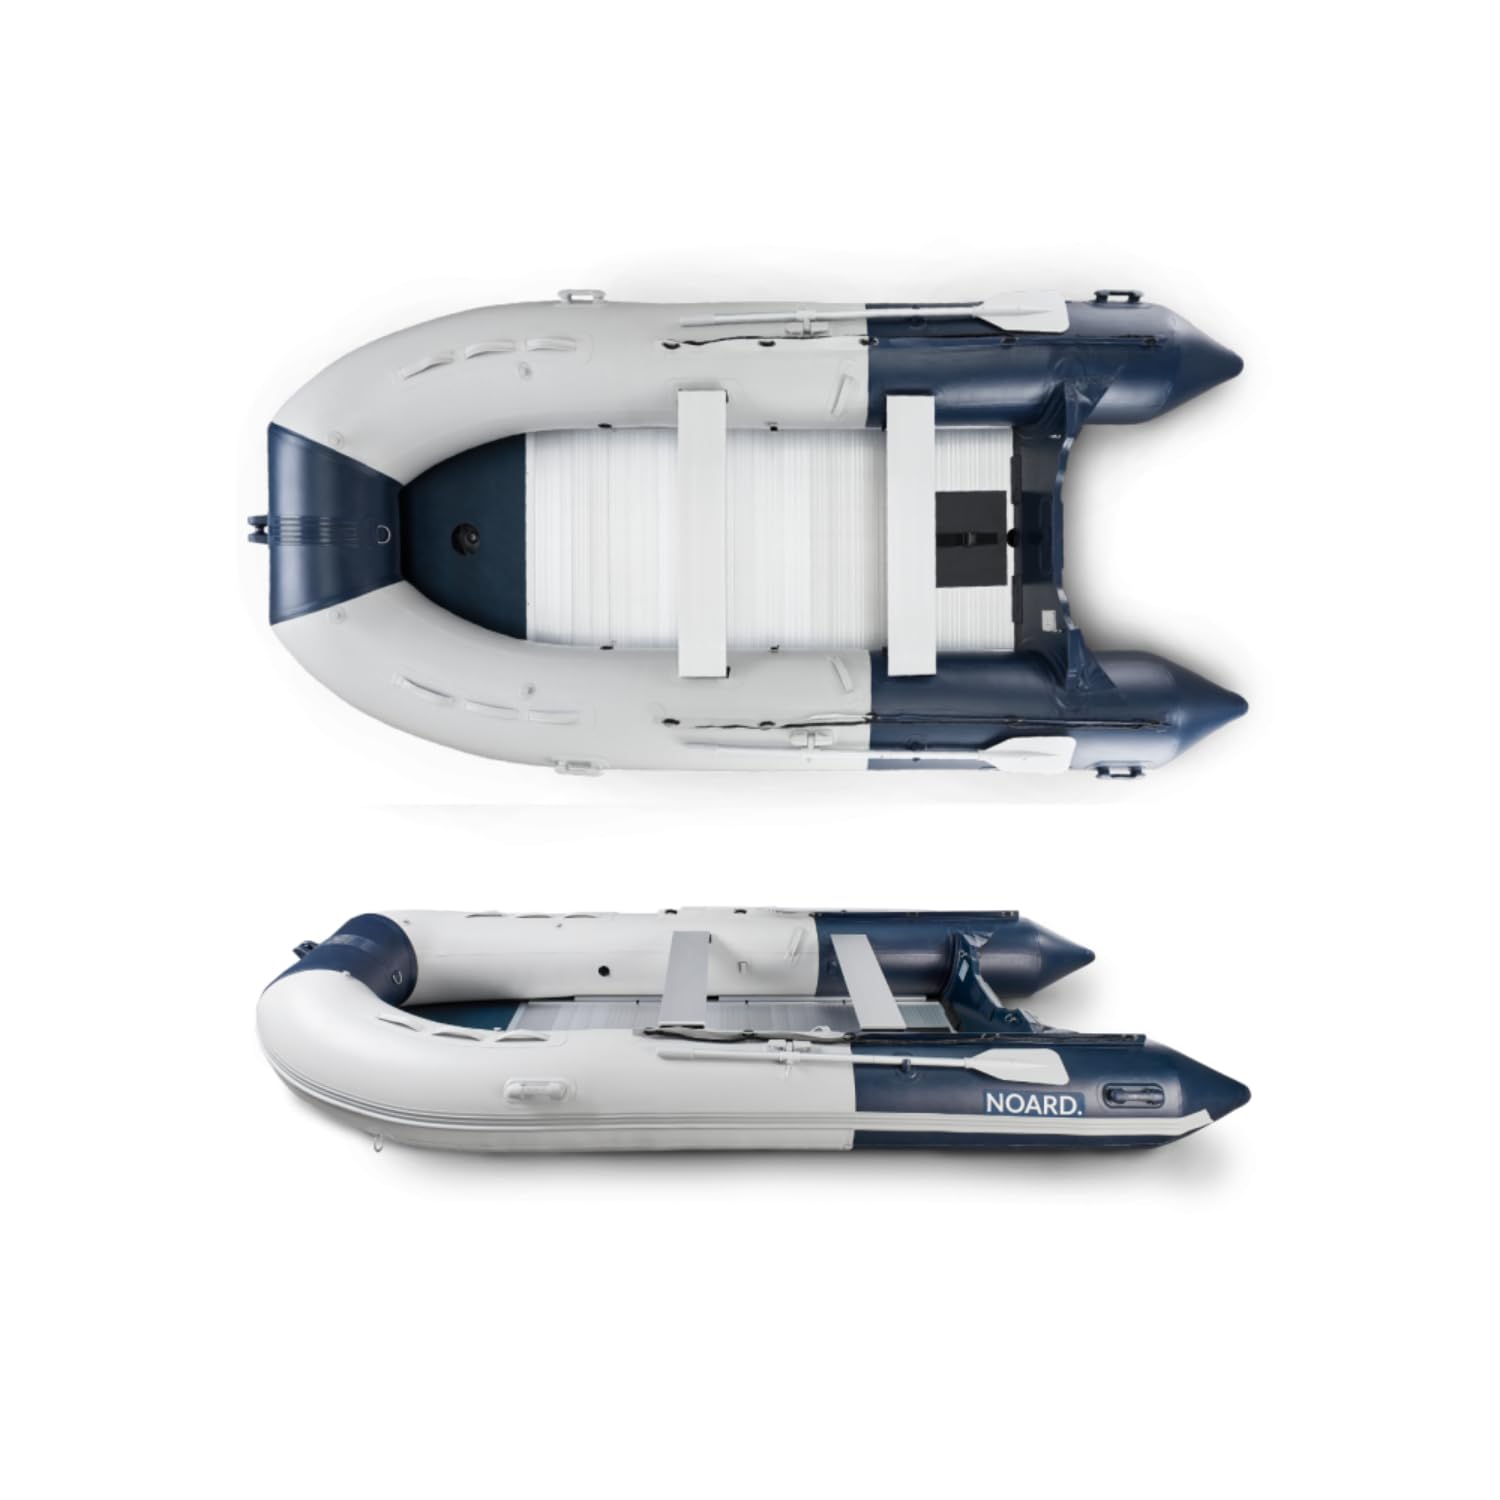 NOARD Schlauchboot mit Aluminiumboden | 430cm Länge | Blau/Grau | Schneller Auf- und Abbau | Leicht für Transport | Ideal für 6 Personen | Komplettset